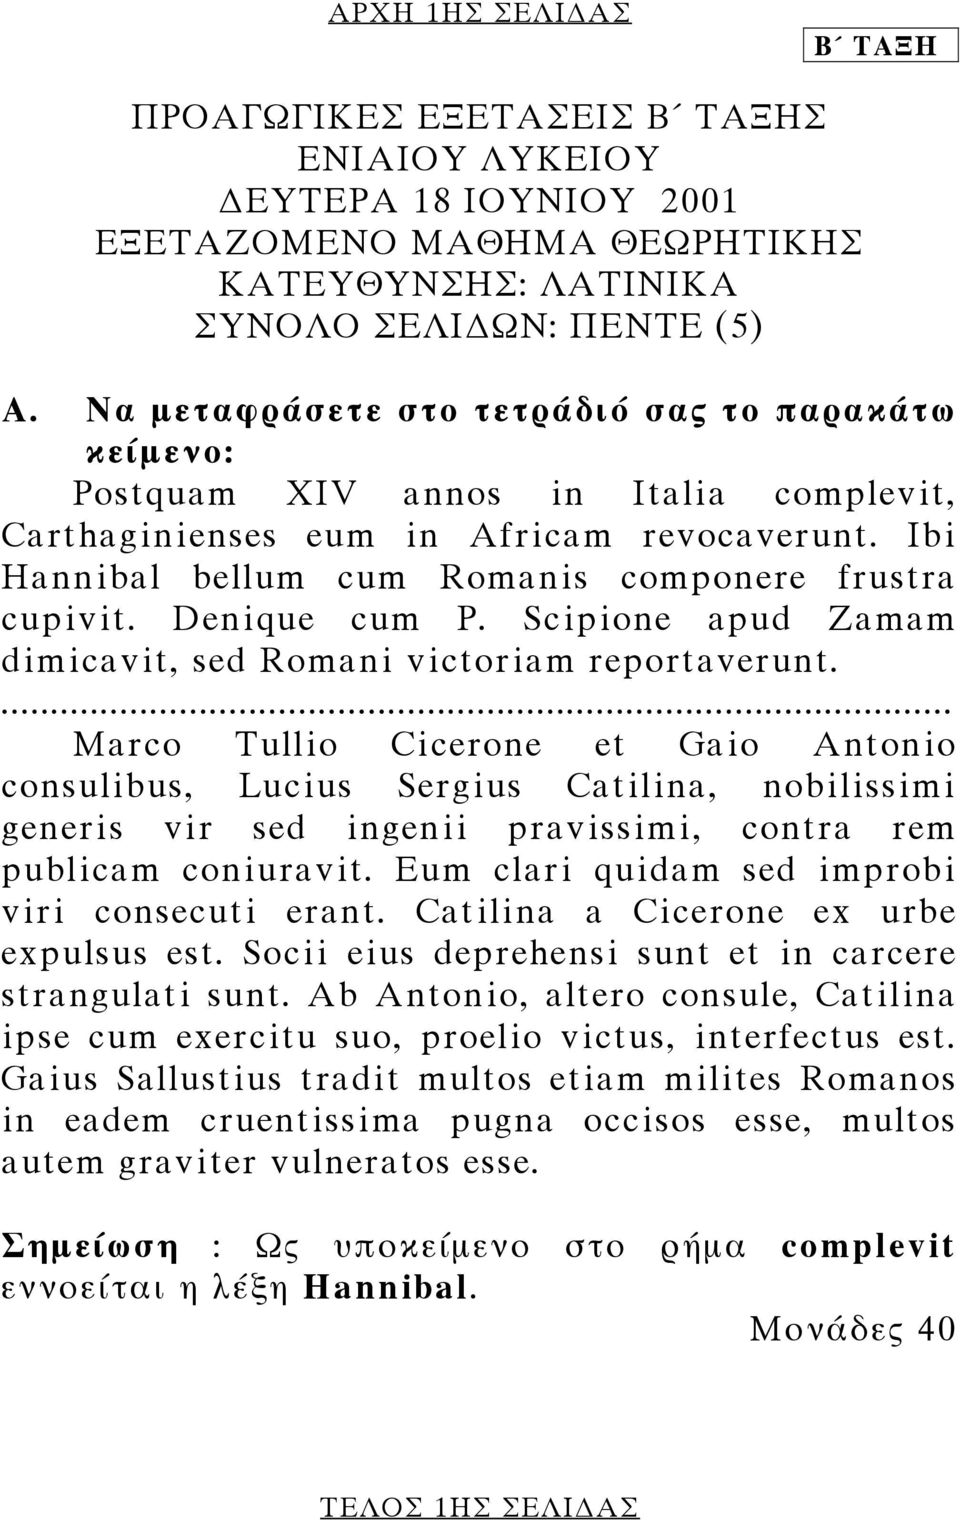 Denique cum P. Scipione apud Zamam dimicavit, sed Romani victoriam reportaverunt.